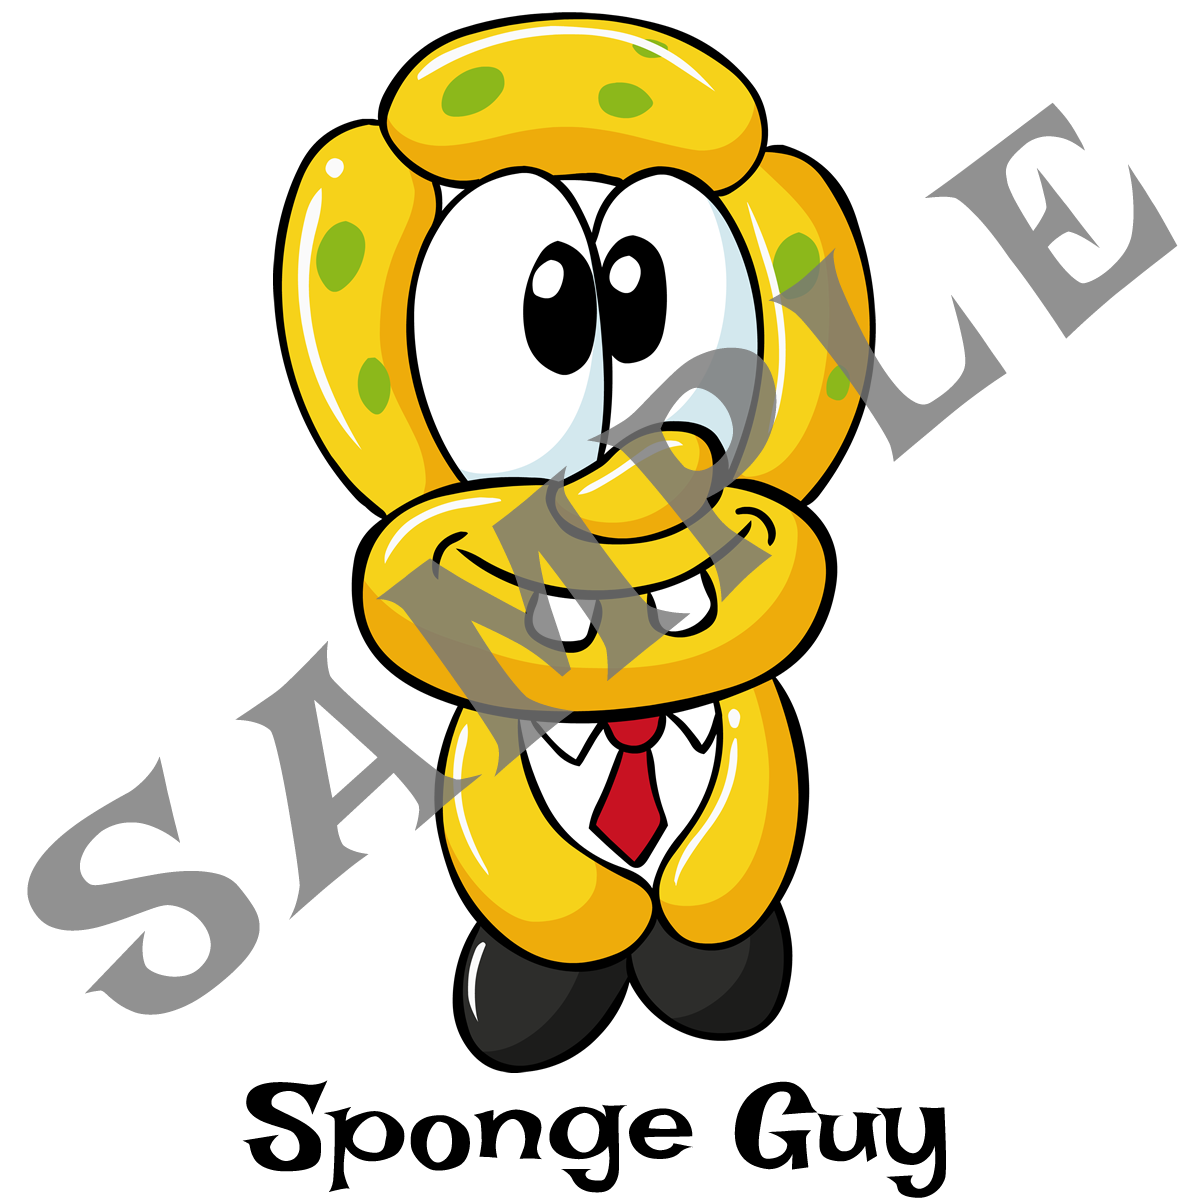 Juan Sponge Guy